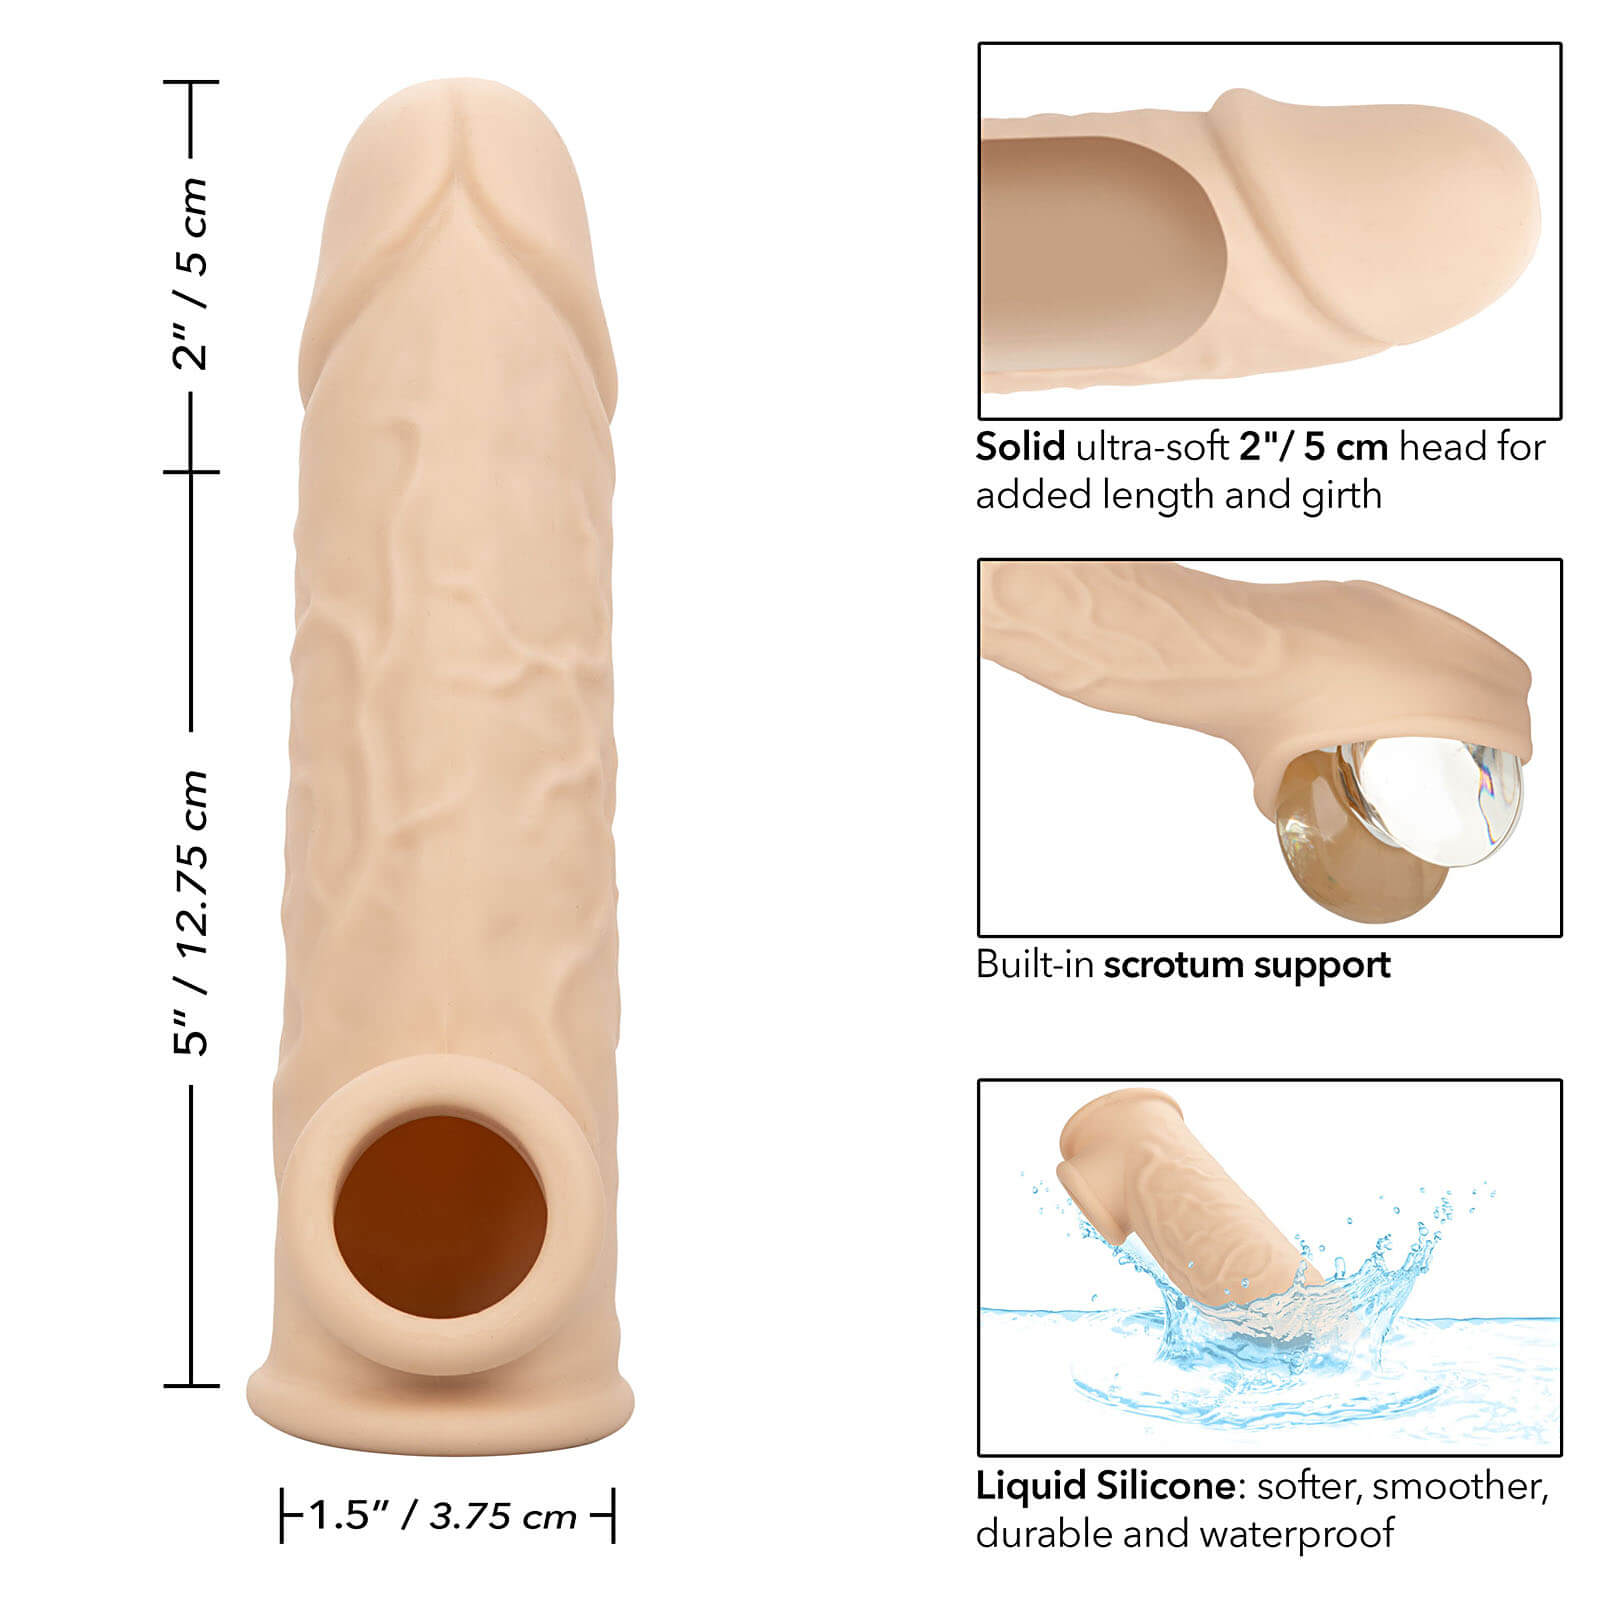 CalExotics Lifelike Extension 7″ (Skin), prodlužovací návlek na penis